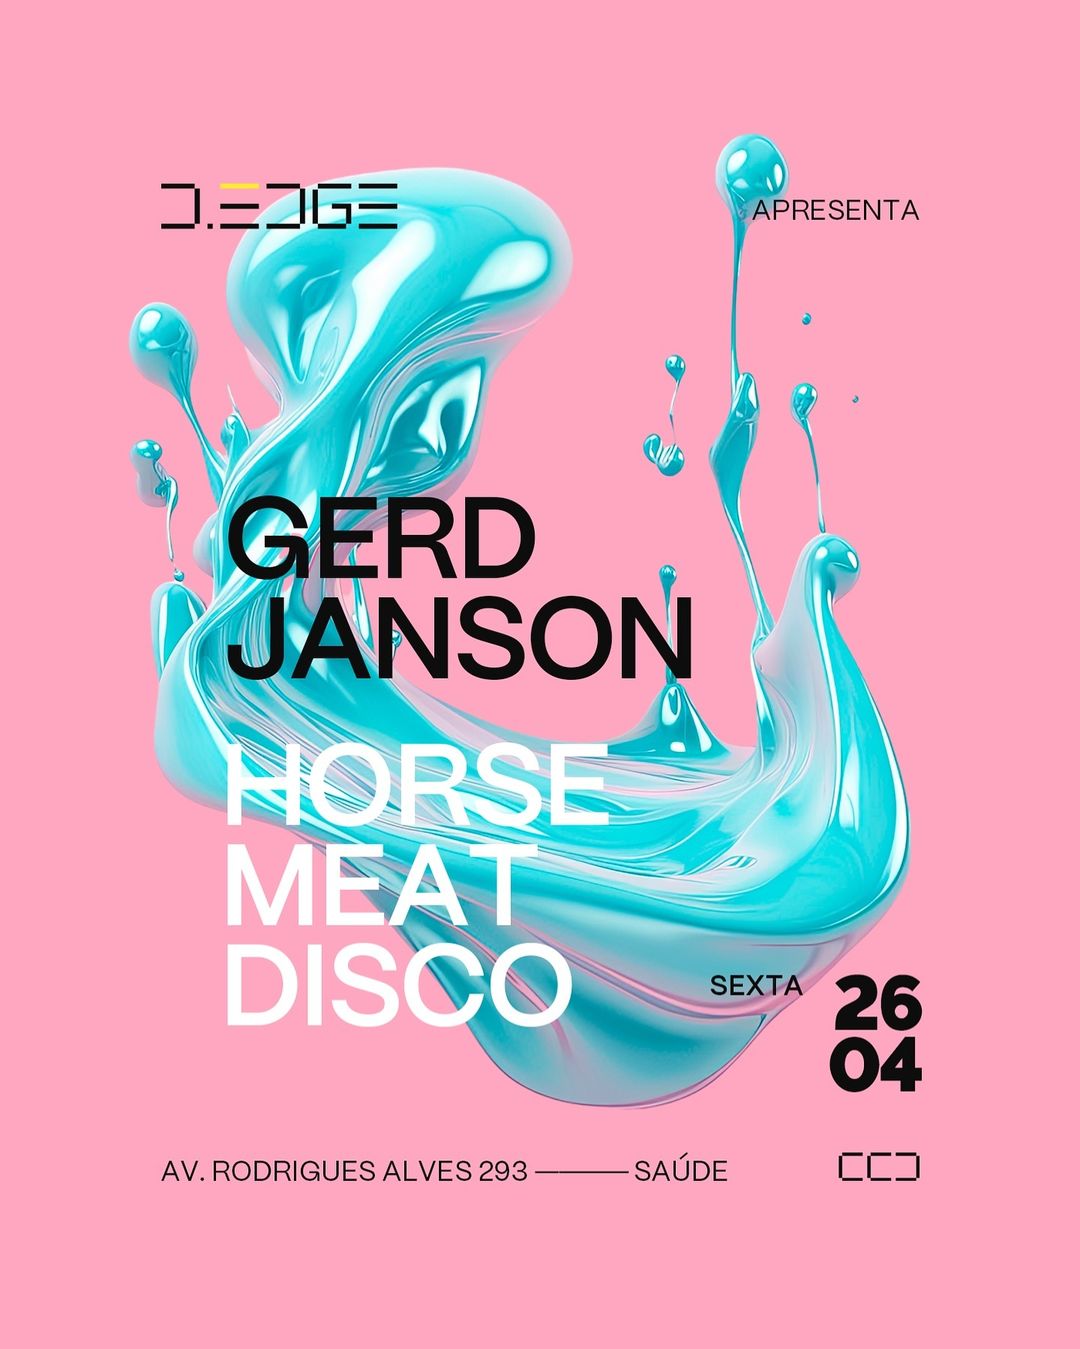 D-Edge Rio | Gerd Janson & Horse Meat Disco